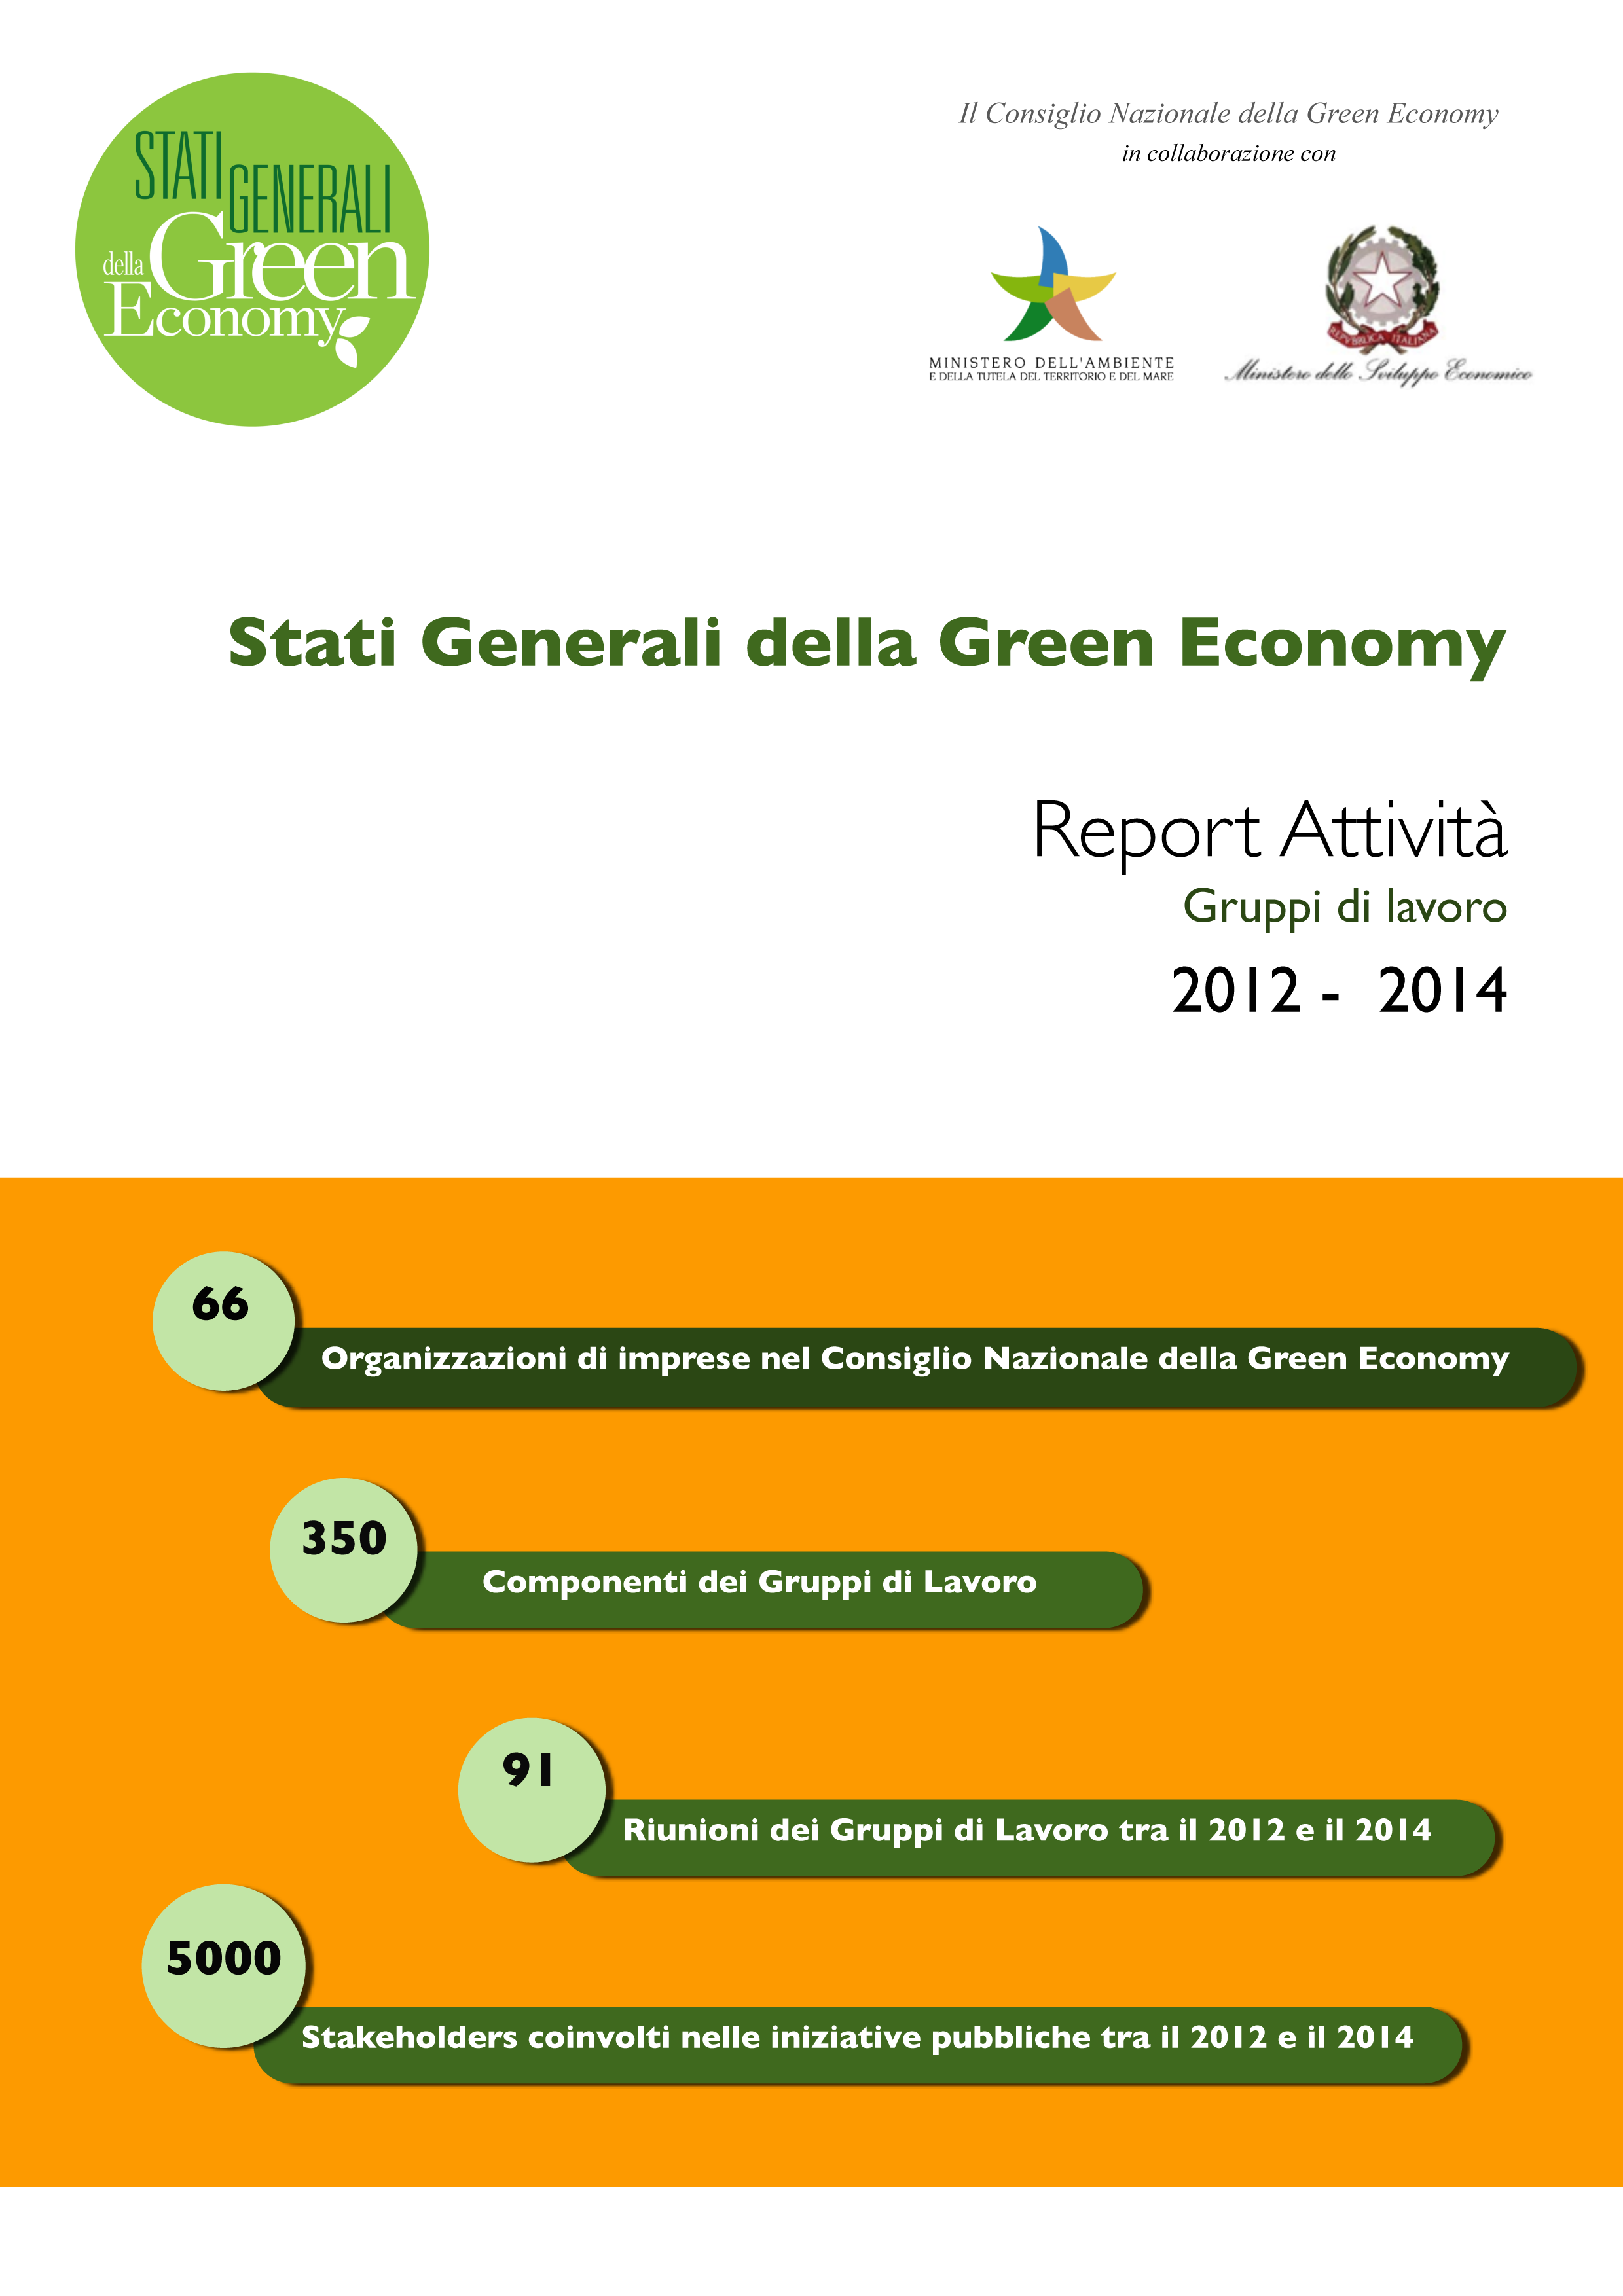 Report GdL Stati Generali della Green Economy_2012-2014